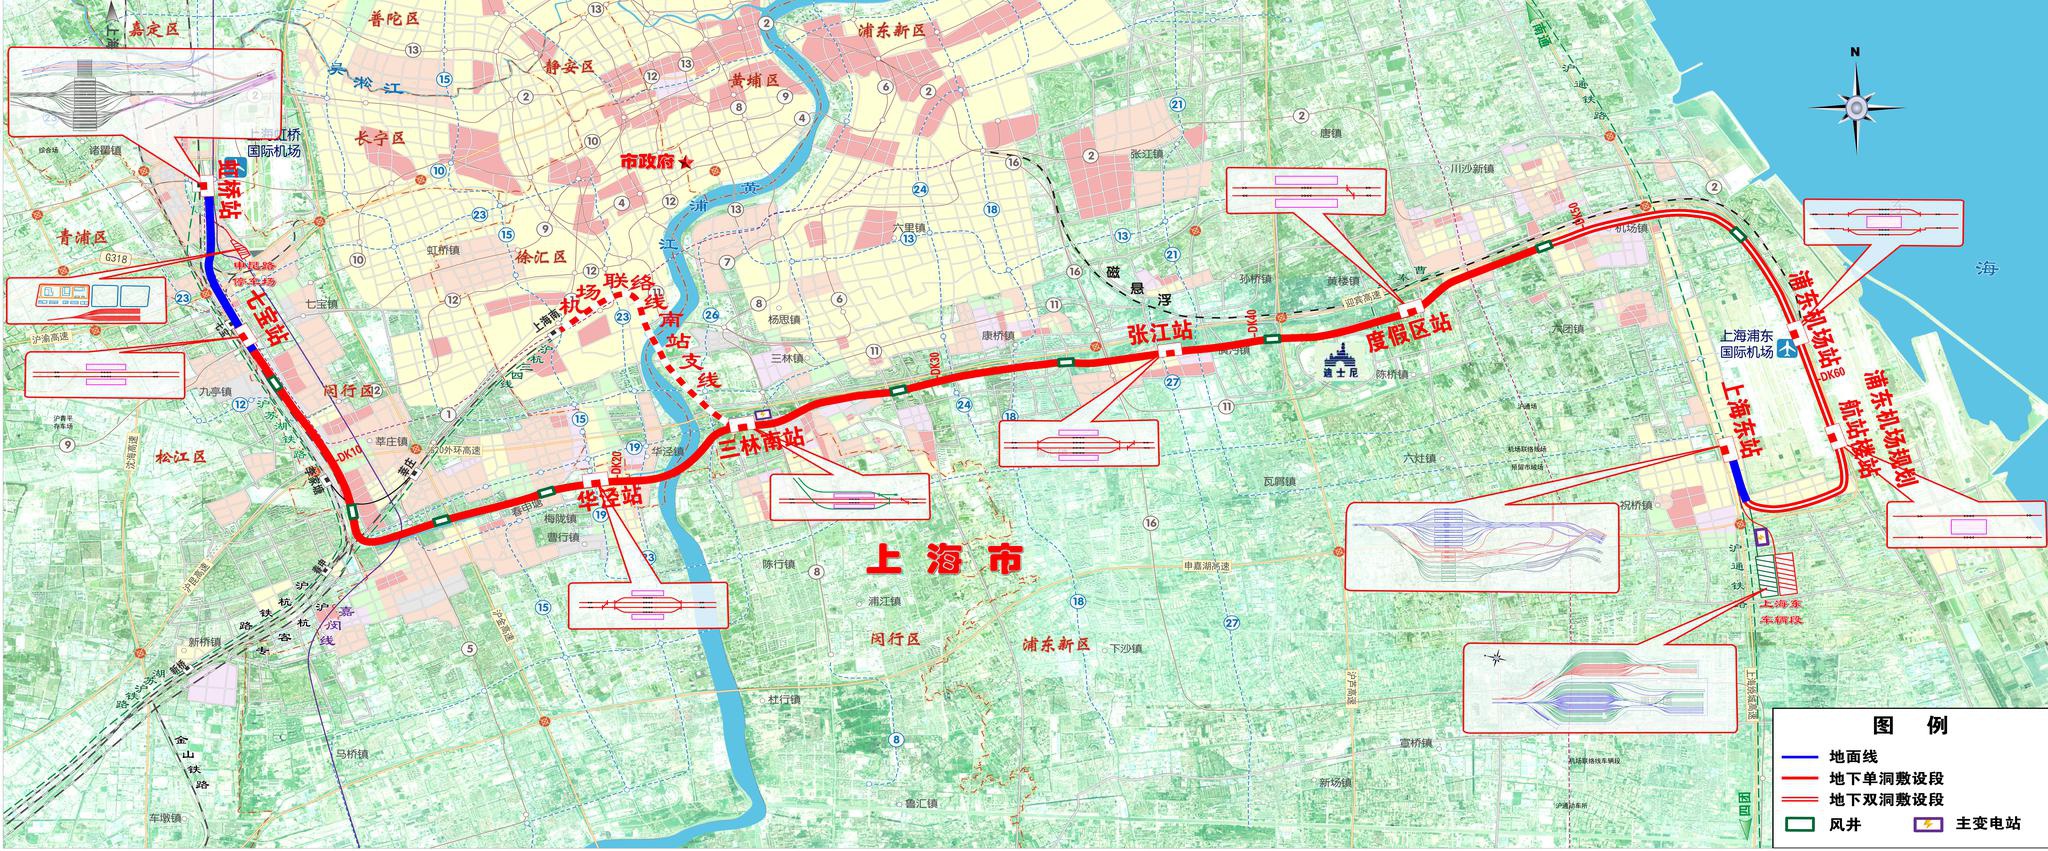 上海市域铁路机场联络线站点、走势、站区示意图来了！__凤凰网